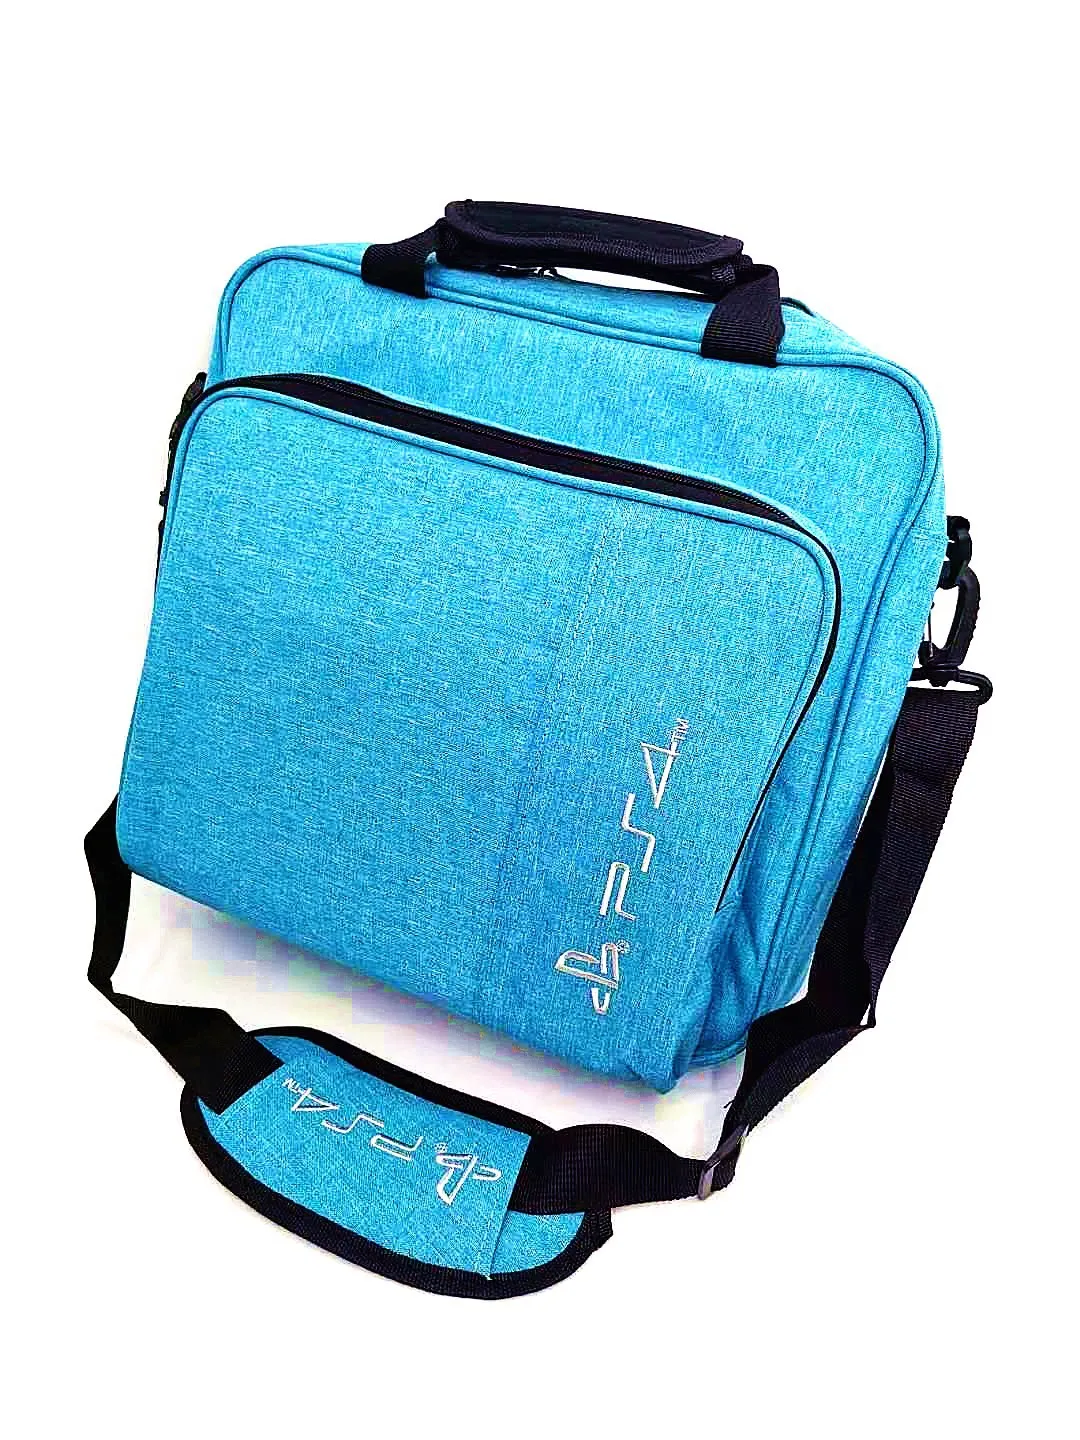 Yoteen сумка для PS4 PRO тонкий Размер Защита через плечо холщовый чехол для playstation 4 консоль многофункциональная сумка - Цвет: blue for ps4